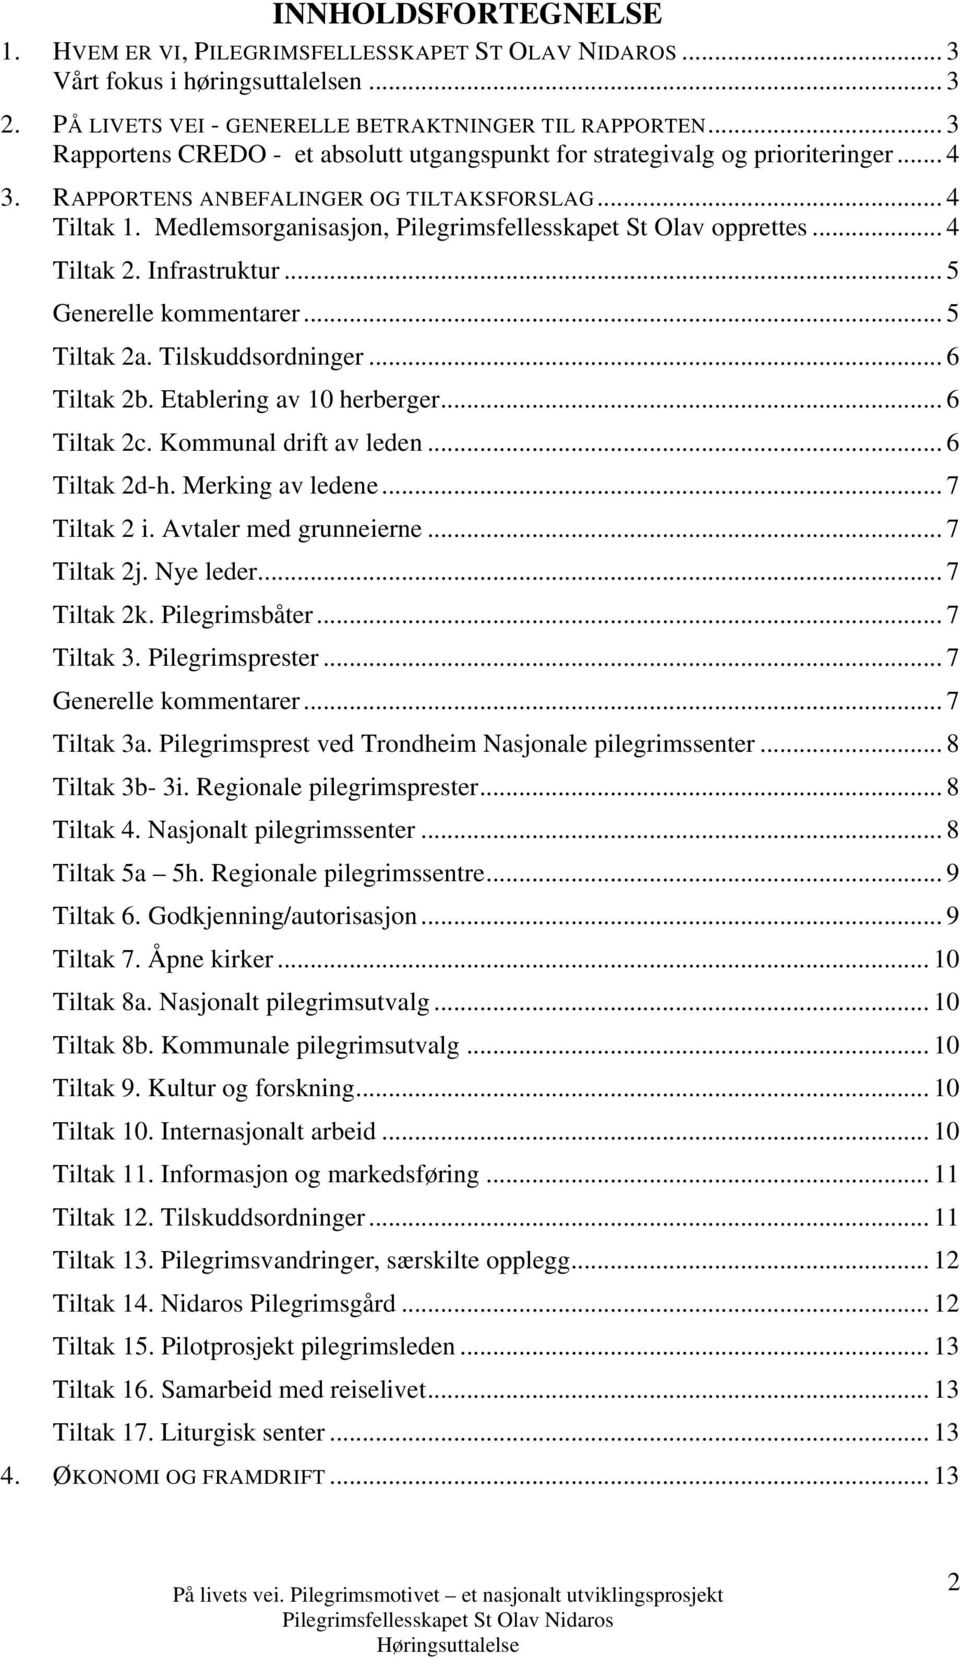 Medlemsorganisasjon, Pilegrimsfellesskapet St Olav opprettes... 4 Tiltak 2. Infrastruktur... 5 Generelle kommentarer... 5 Tiltak 2a. Tilskuddsordninger... 6 Tiltak 2b. Etablering av 10 herberger.